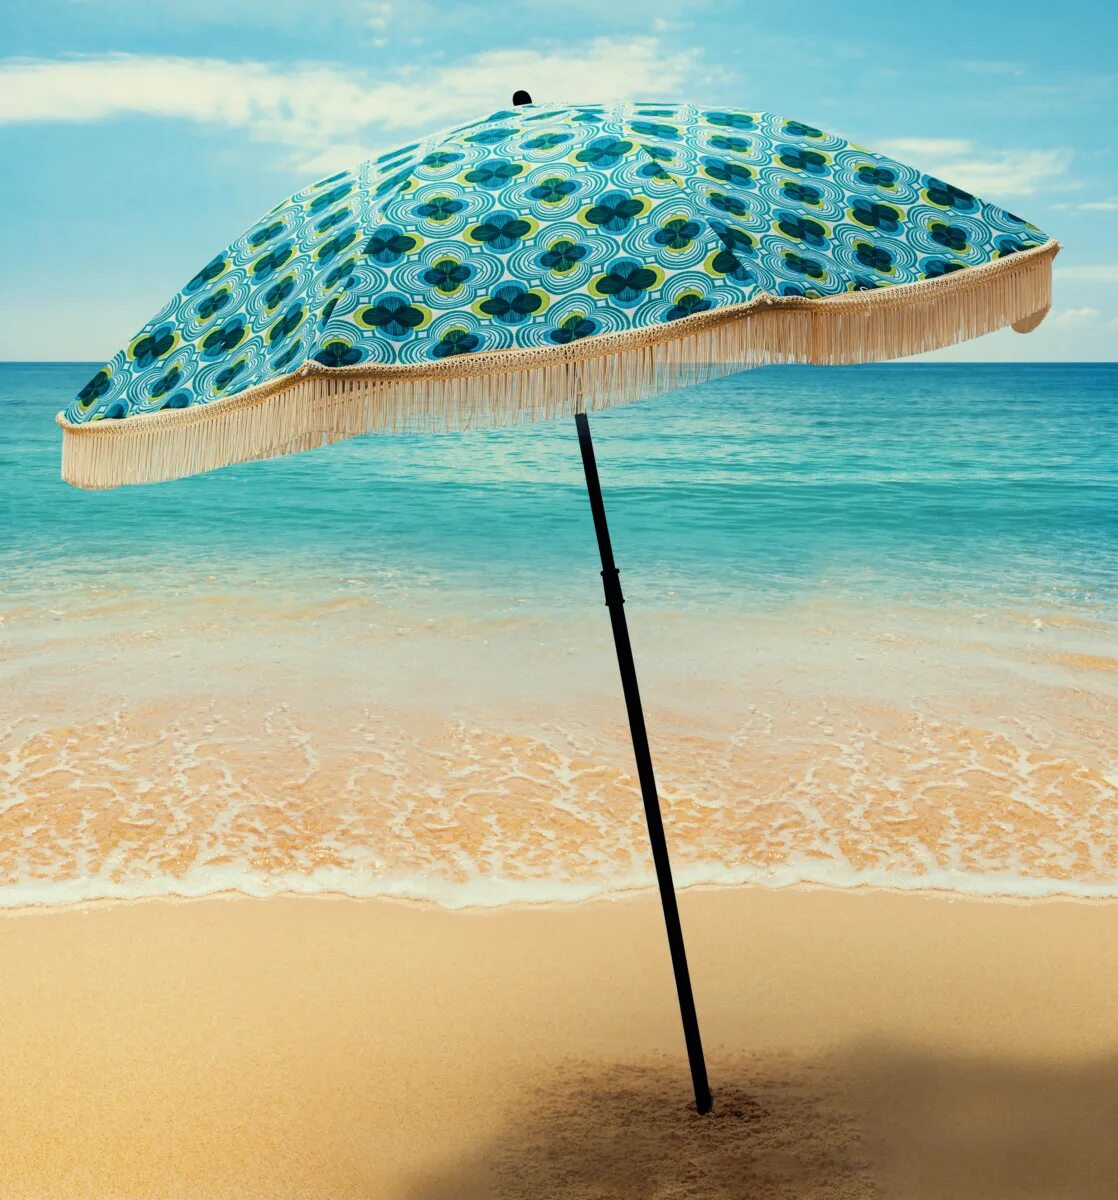 Купить пляжный зонт от солнца. Пляж умбрелла. Decathlon Beach Umbrella. Зонт от солнца пляжный. Зонтик на пляже.